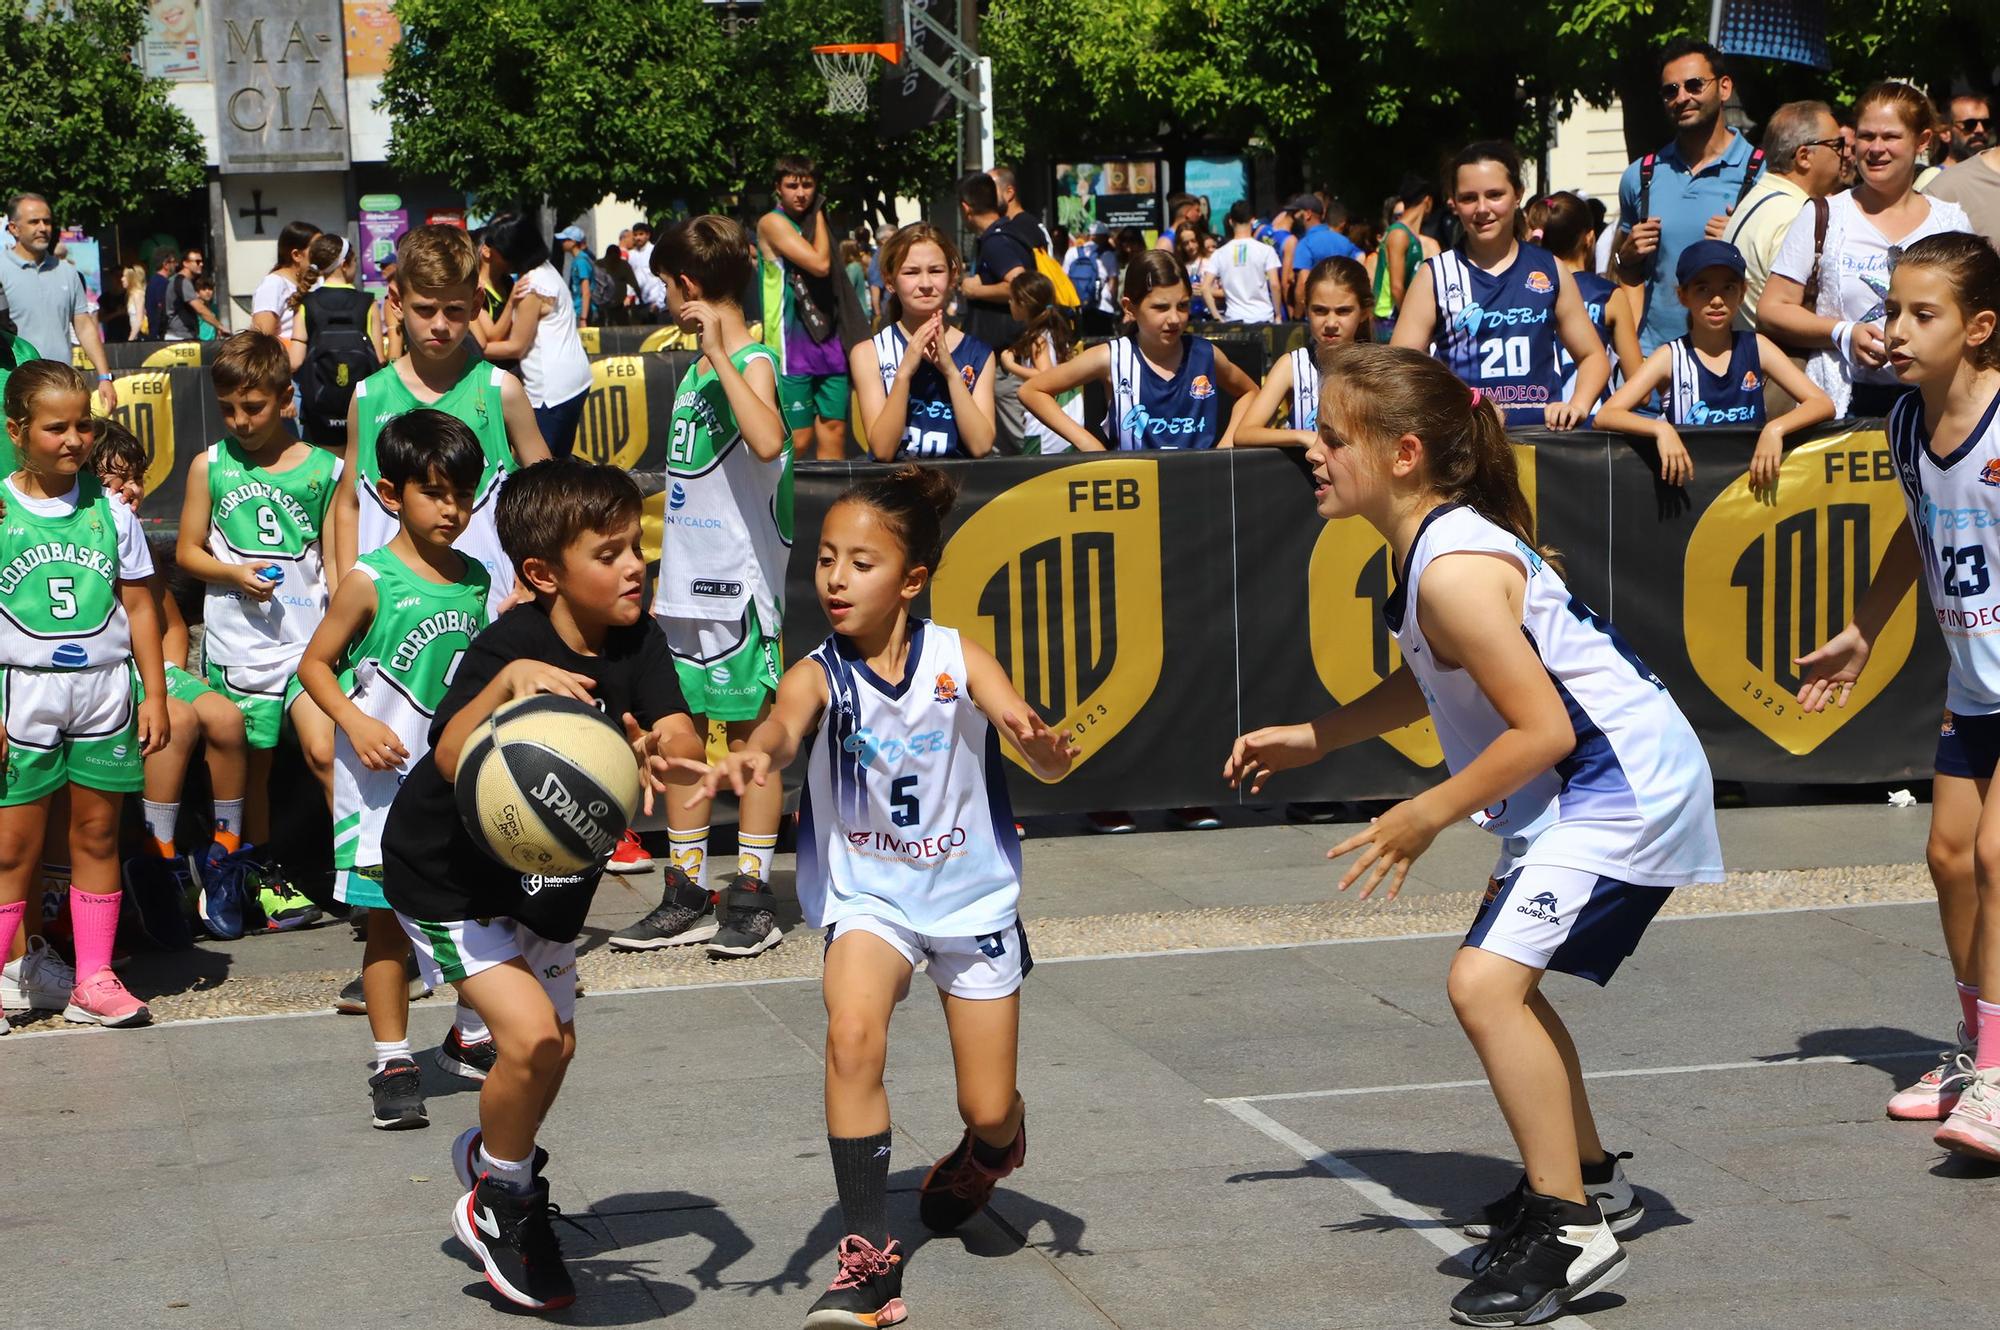 El torneo de baloncesto 3x3 de Las Tendillas en imágenes